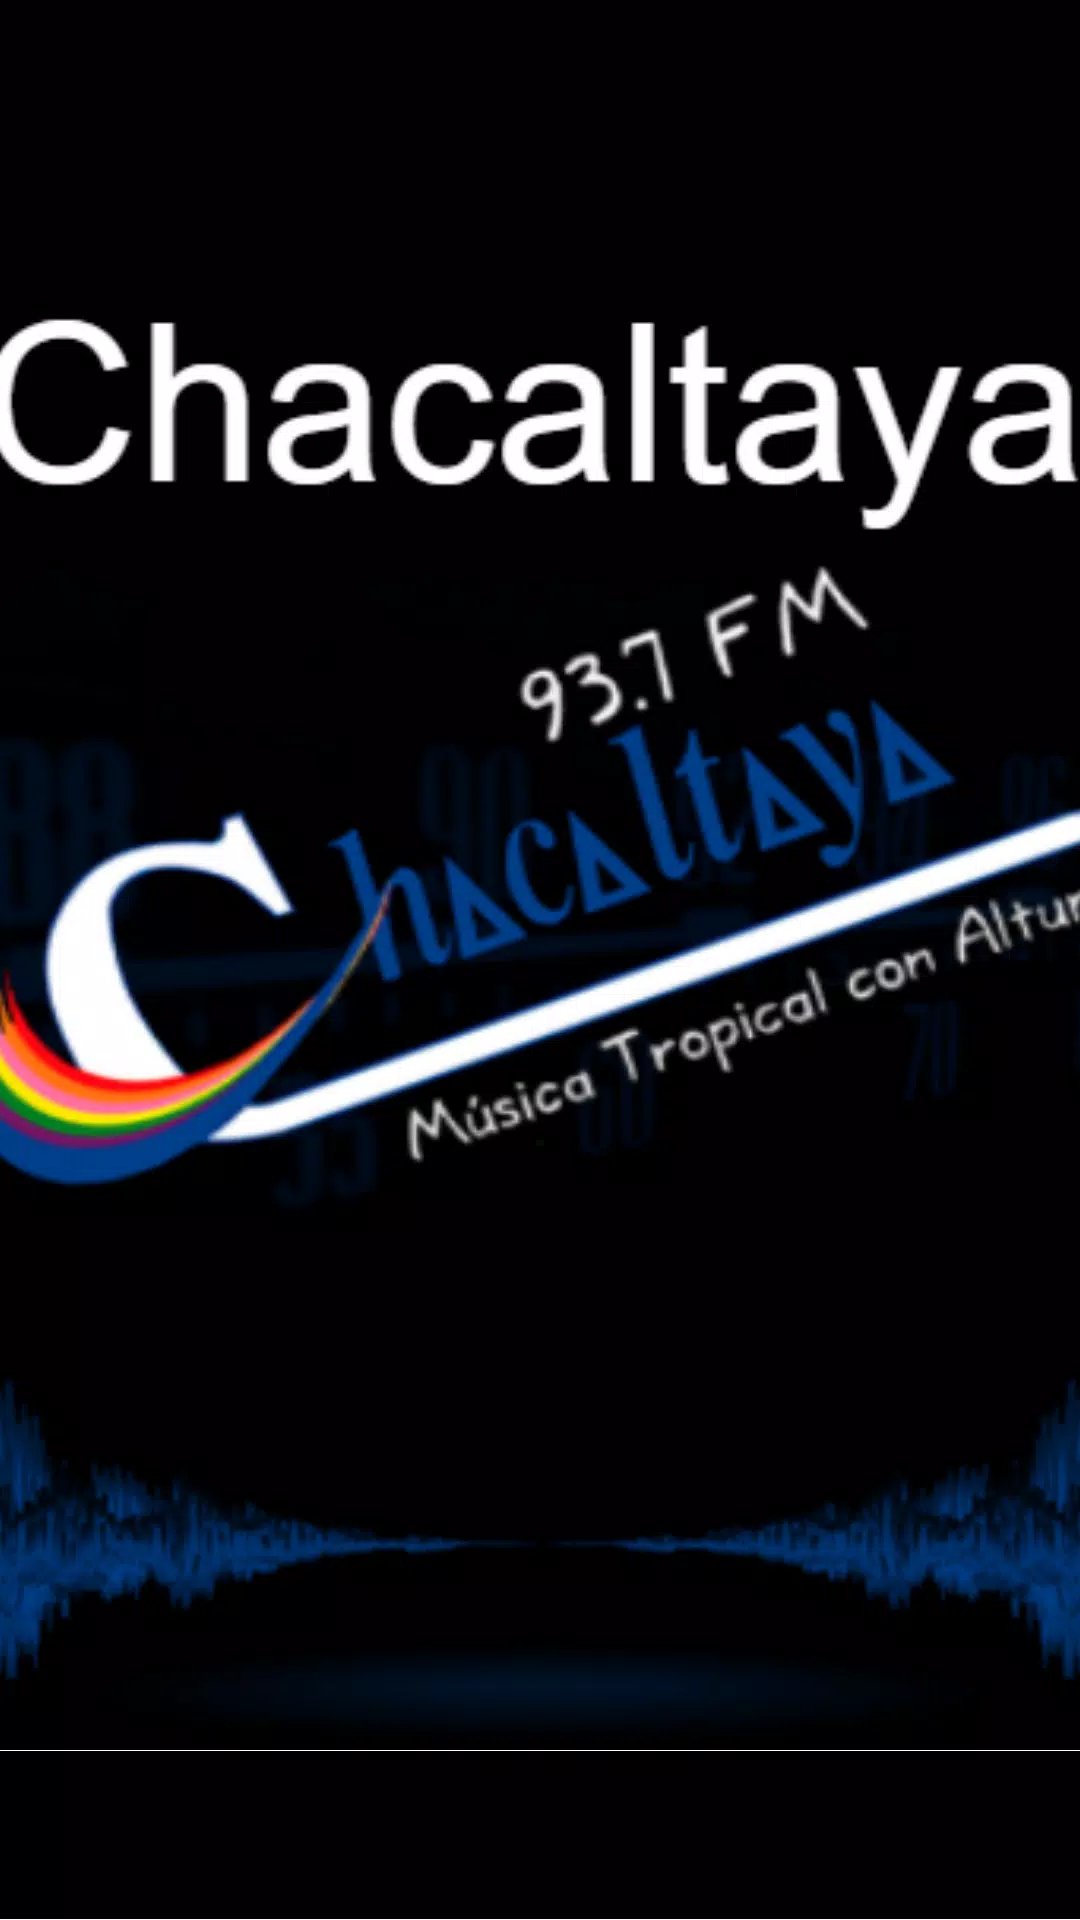 Descarga de APK de Radio Chacaltaya 93.7 BOLIVIA para Android